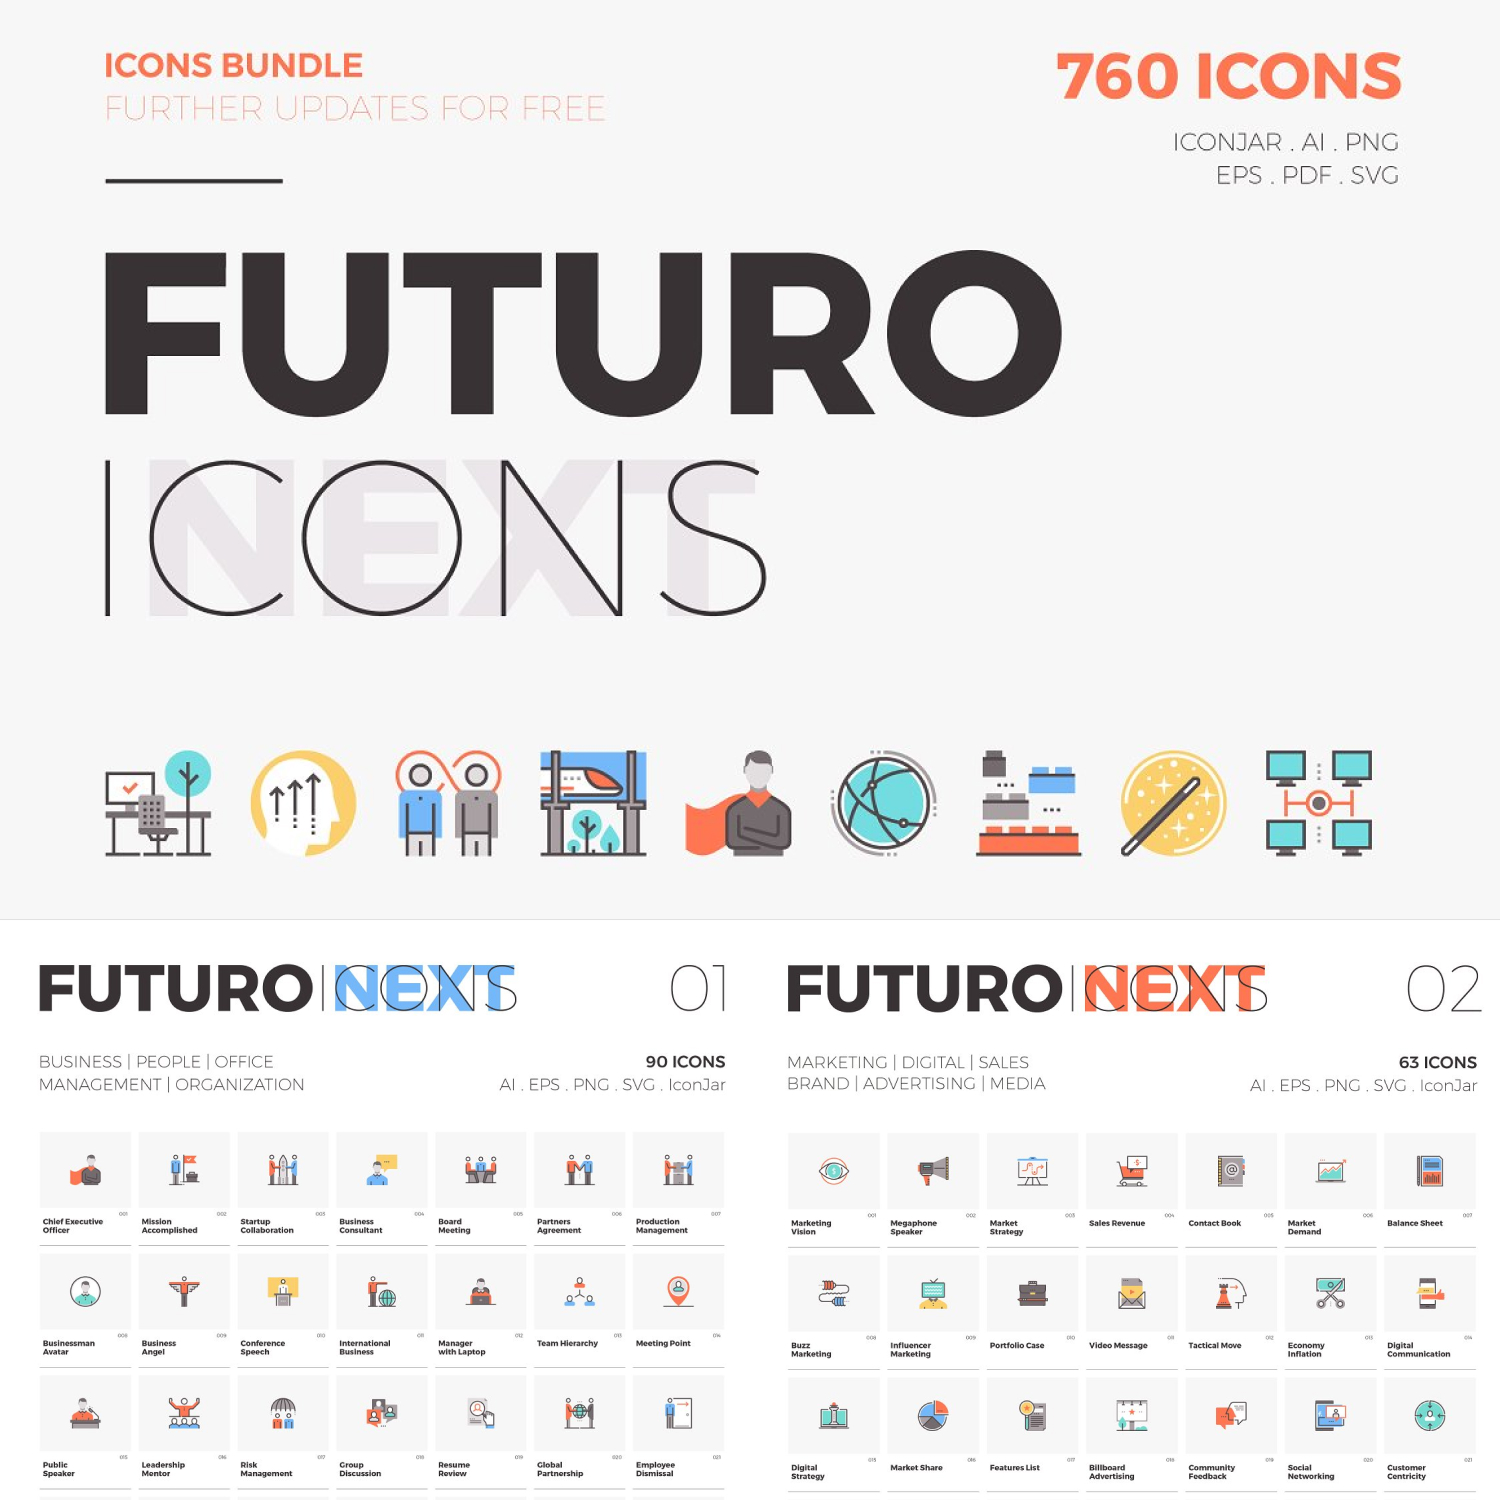 Preview futuro next icons bundle.